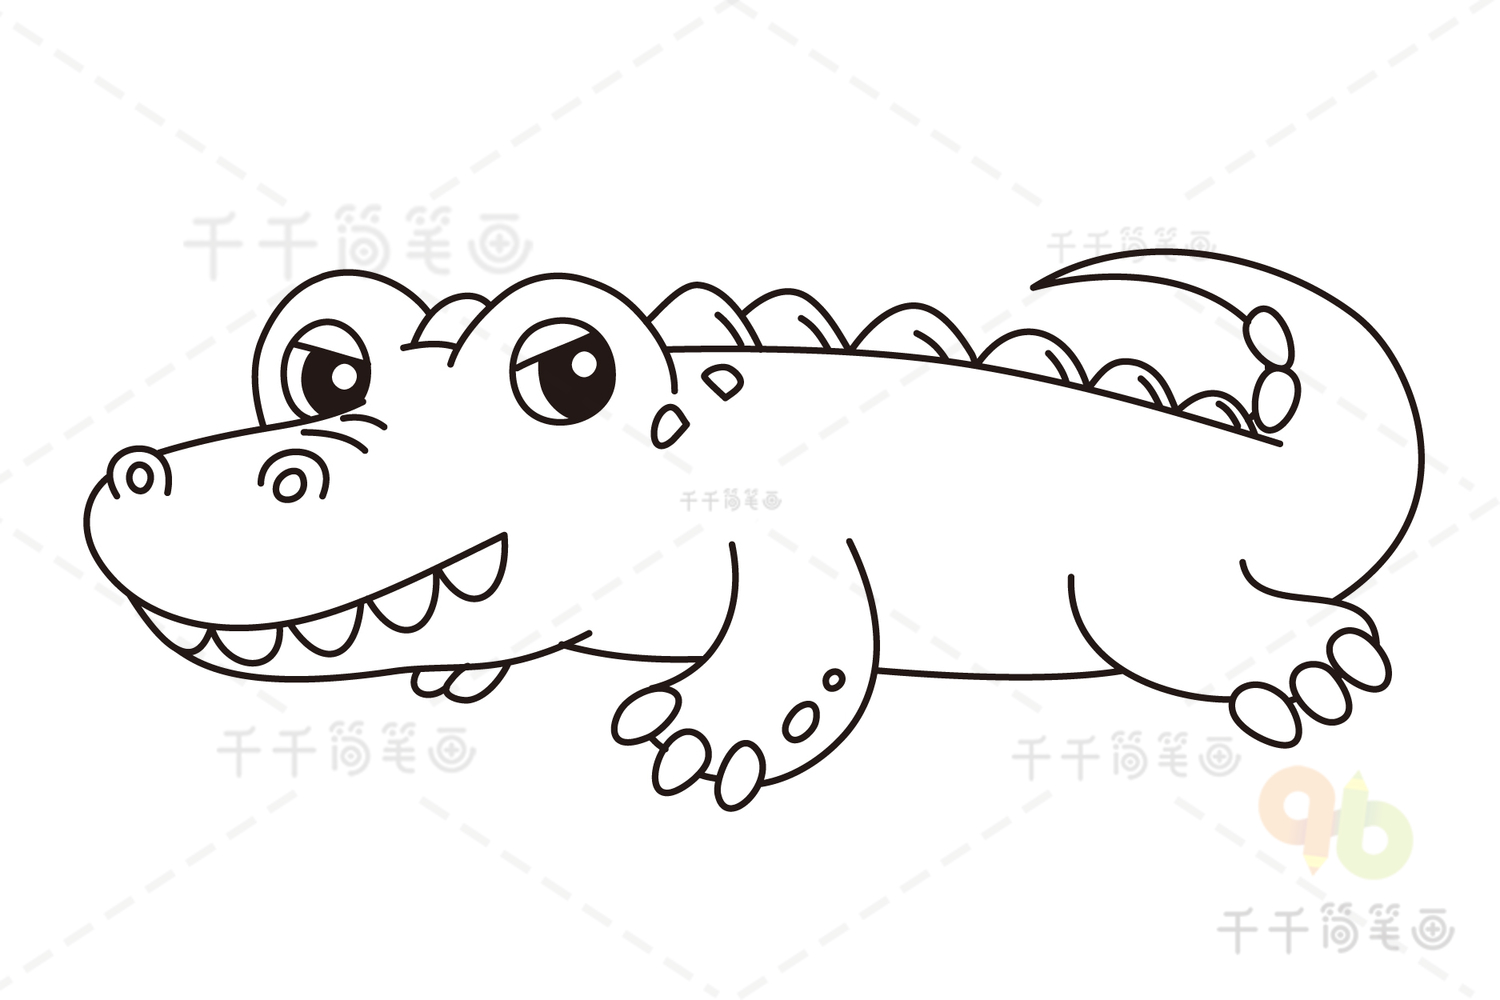 黑白的鳄鱼 库存图片. 图片 包括有 牙齿, 模式, 黄色, 重婚, 空白, 本质, 鳄鱼, 恐惧, 野生生物 - 67579513